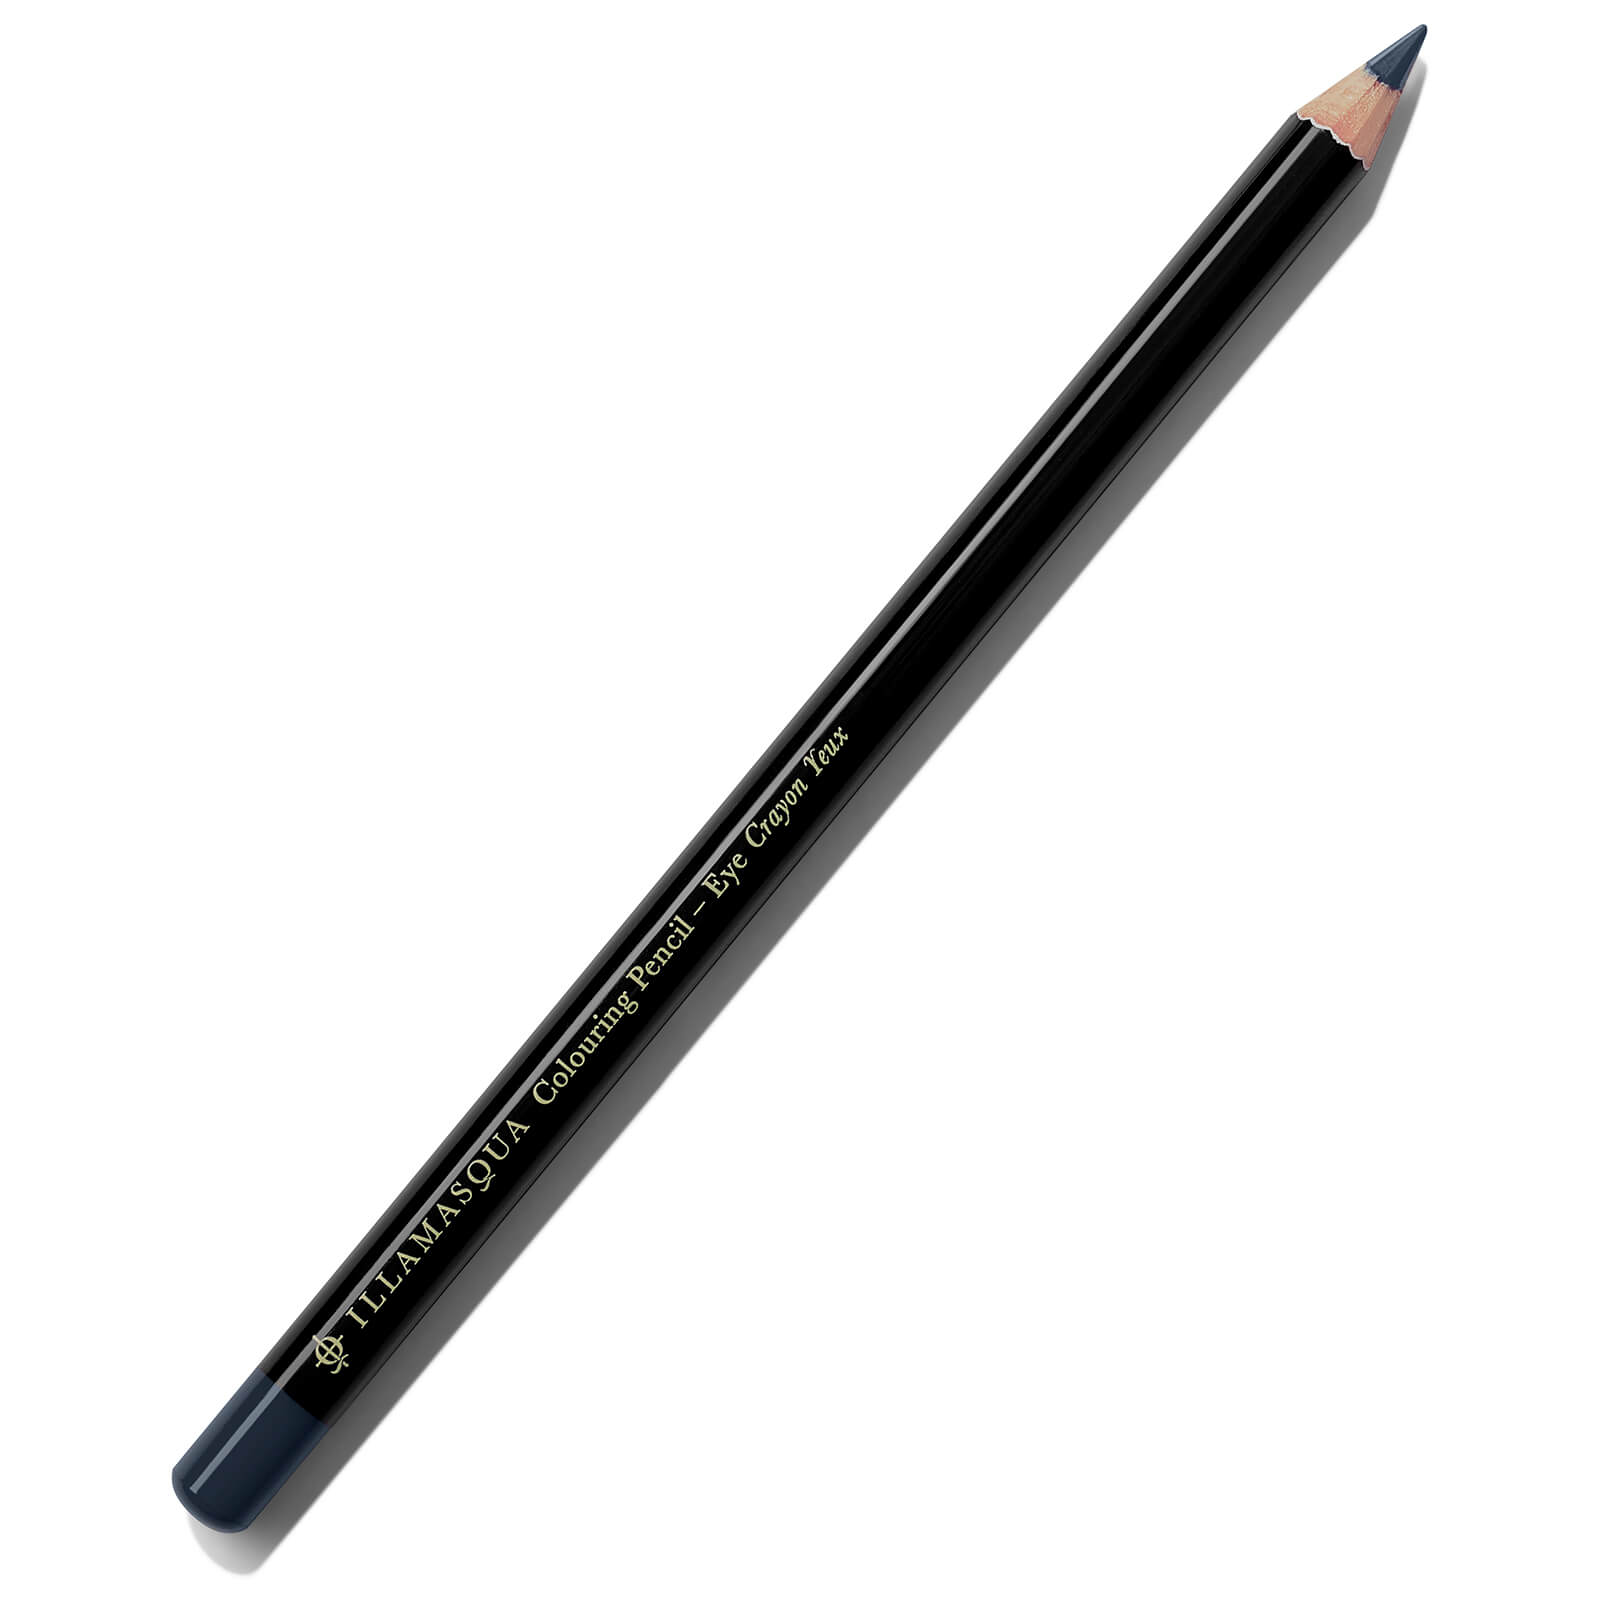 colouring eye pencil (various shades) - navy